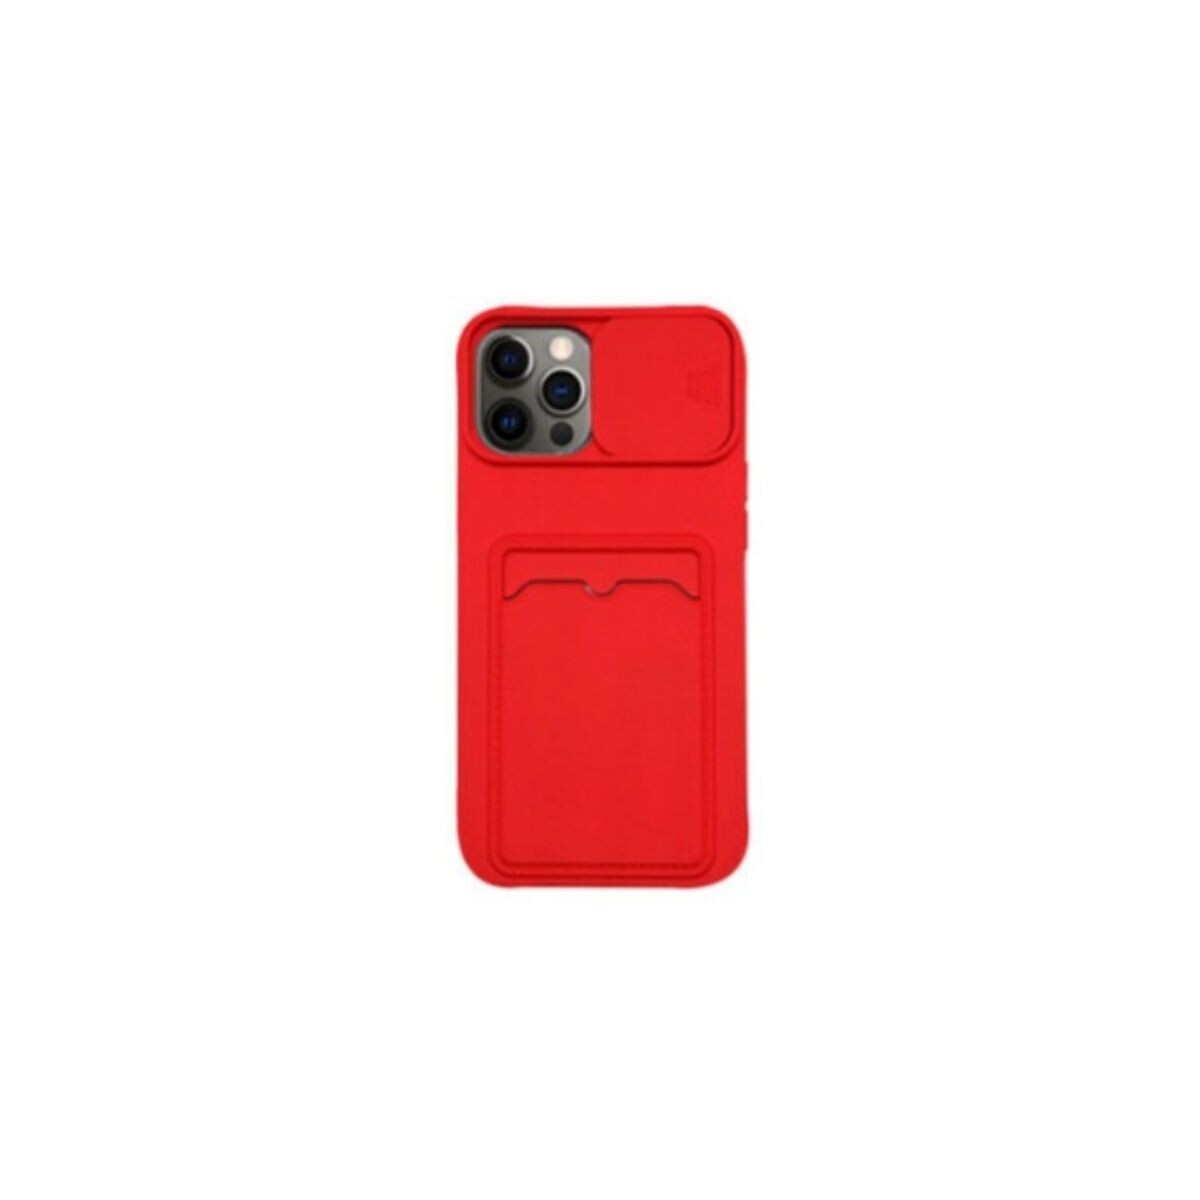 Protector cubre cámara para Xiaomi Redmi 9c rojo 